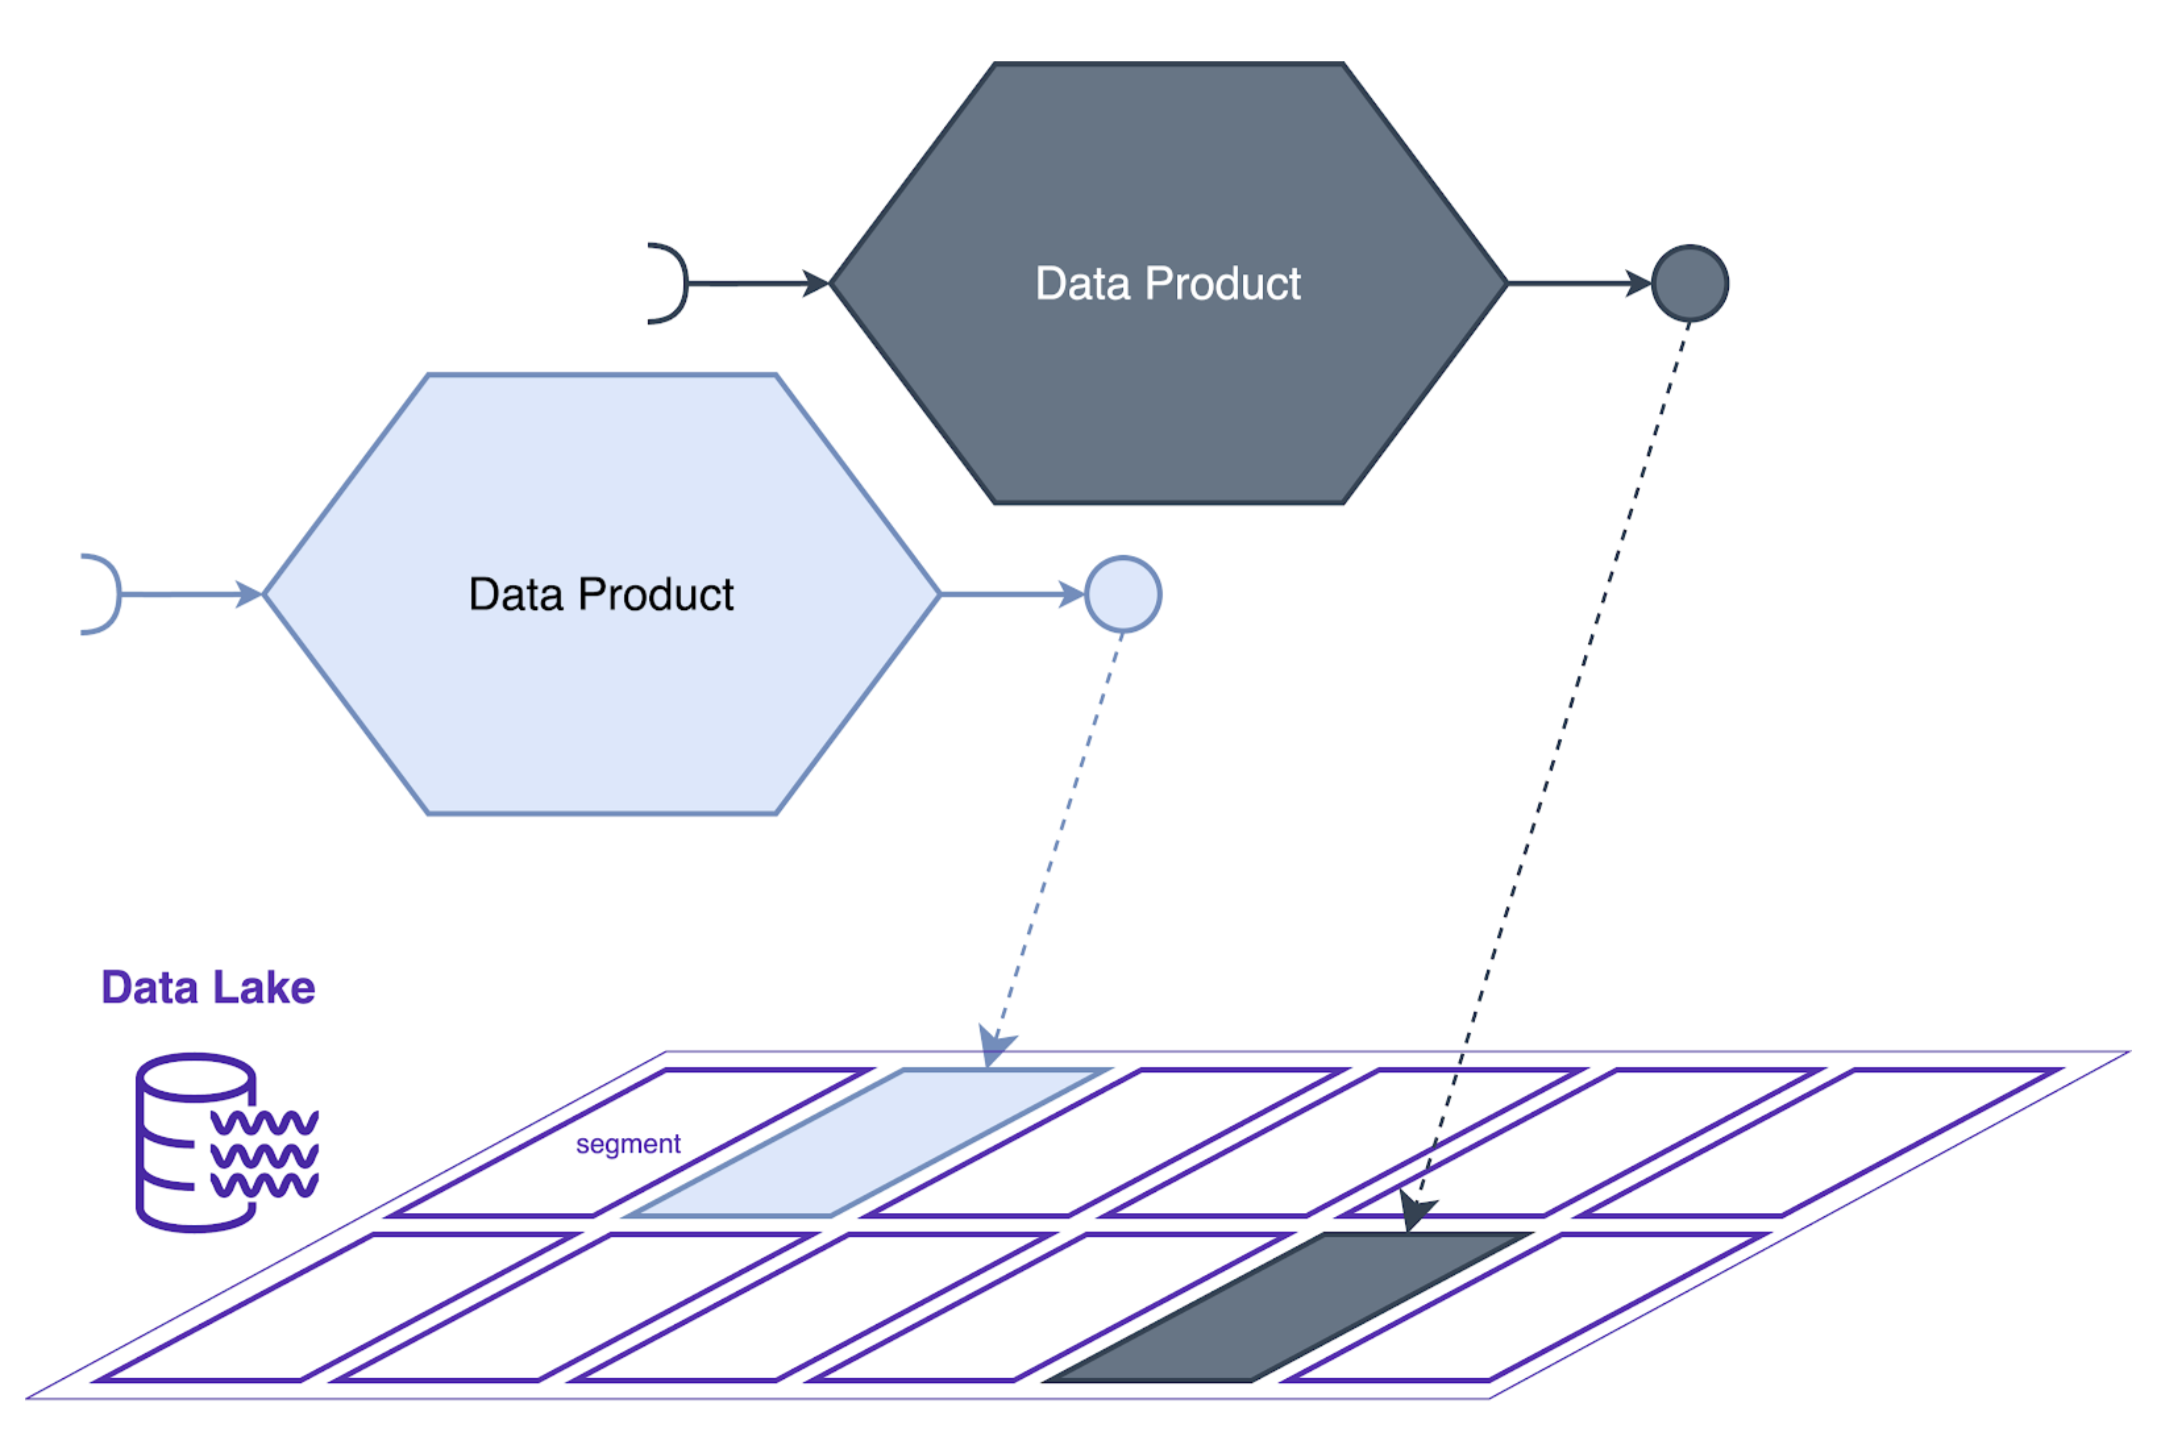 tekening van 2 diagrammen genaamd Data Product die naar segmenten naar beneden wijzen via een tekening genaamd Data Lake